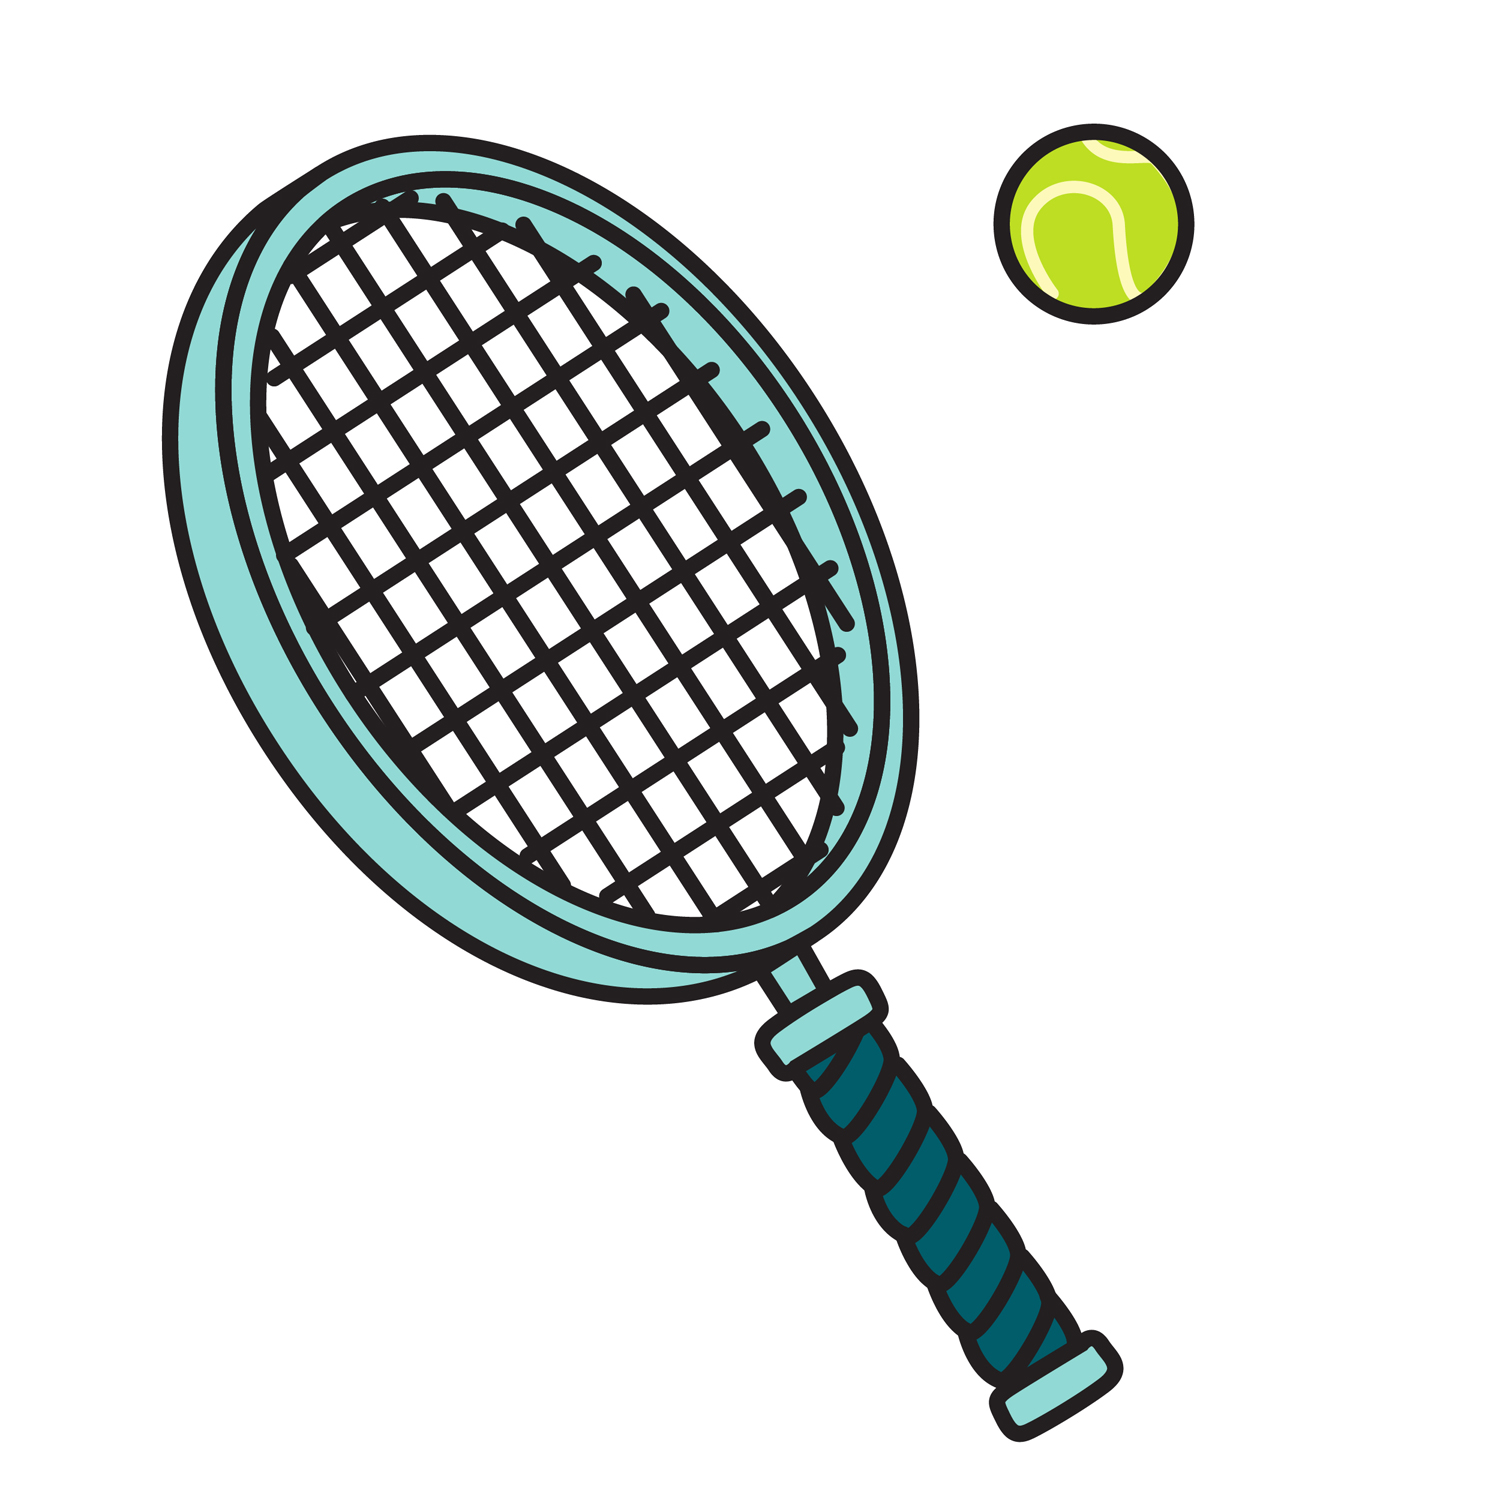 Racket With A Green Tennis Ba - Clipart Tennis Racket